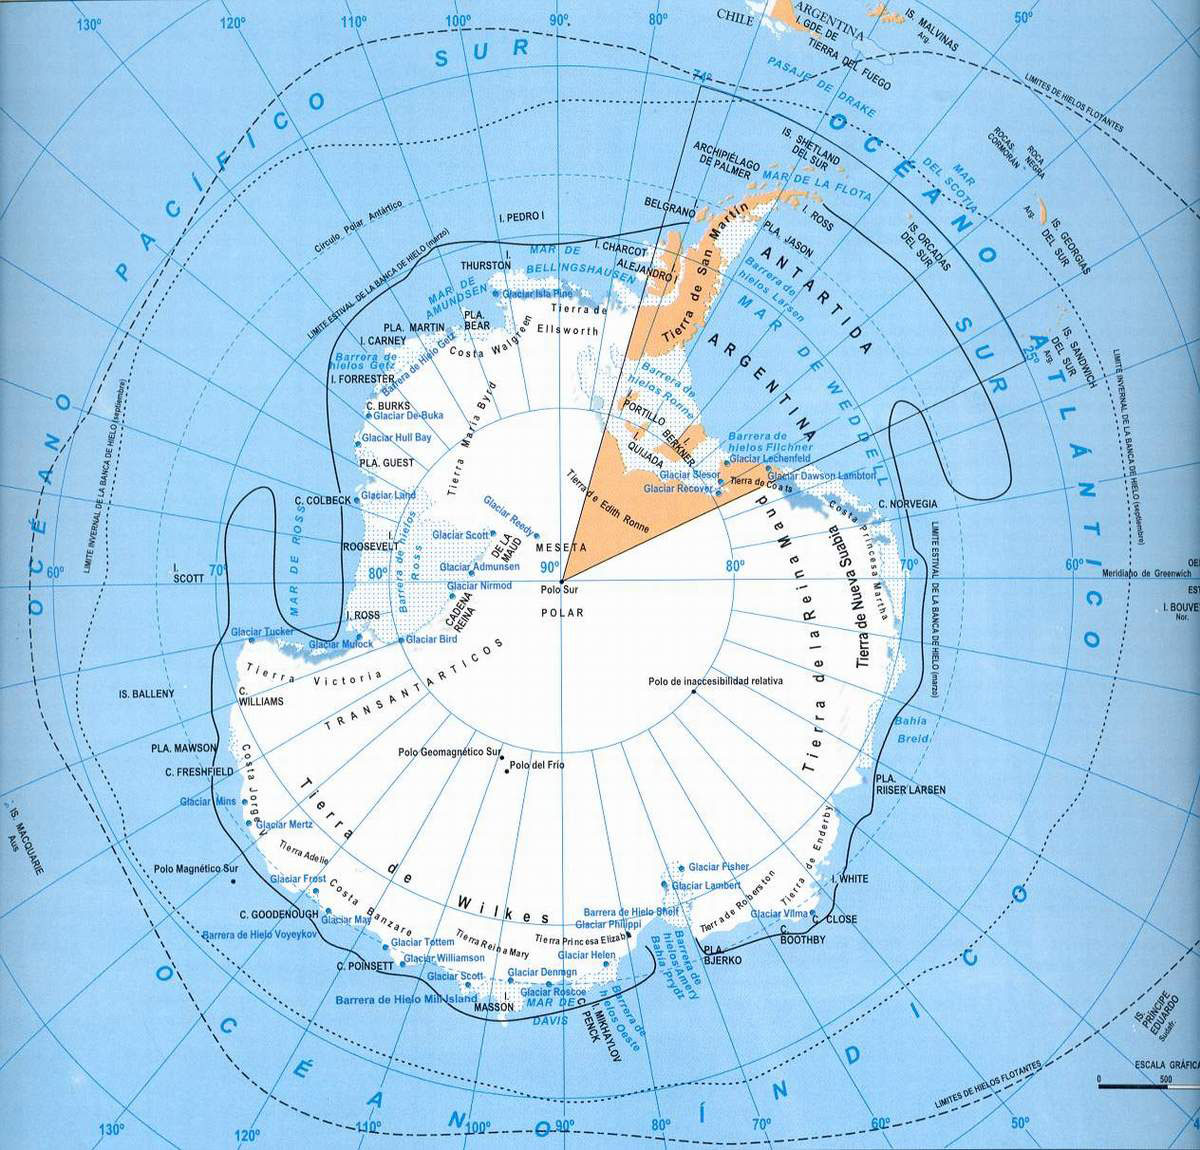 Mapa del territorio actual de Territorio antártico Británico